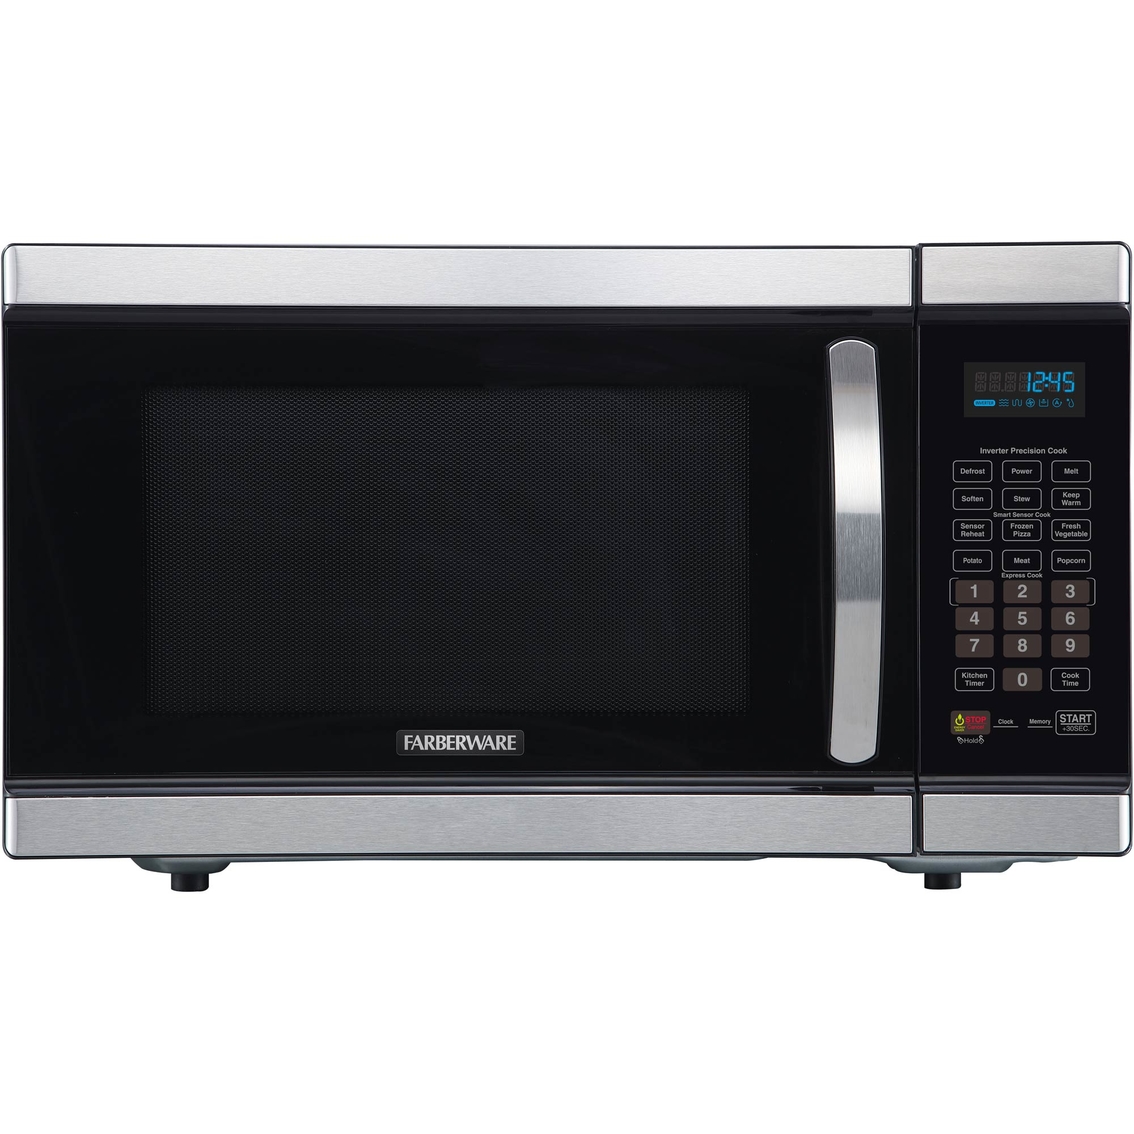 Farberware Gourmet 1 1 Cu Ft 1100 Watt Microwave Oven Stainless